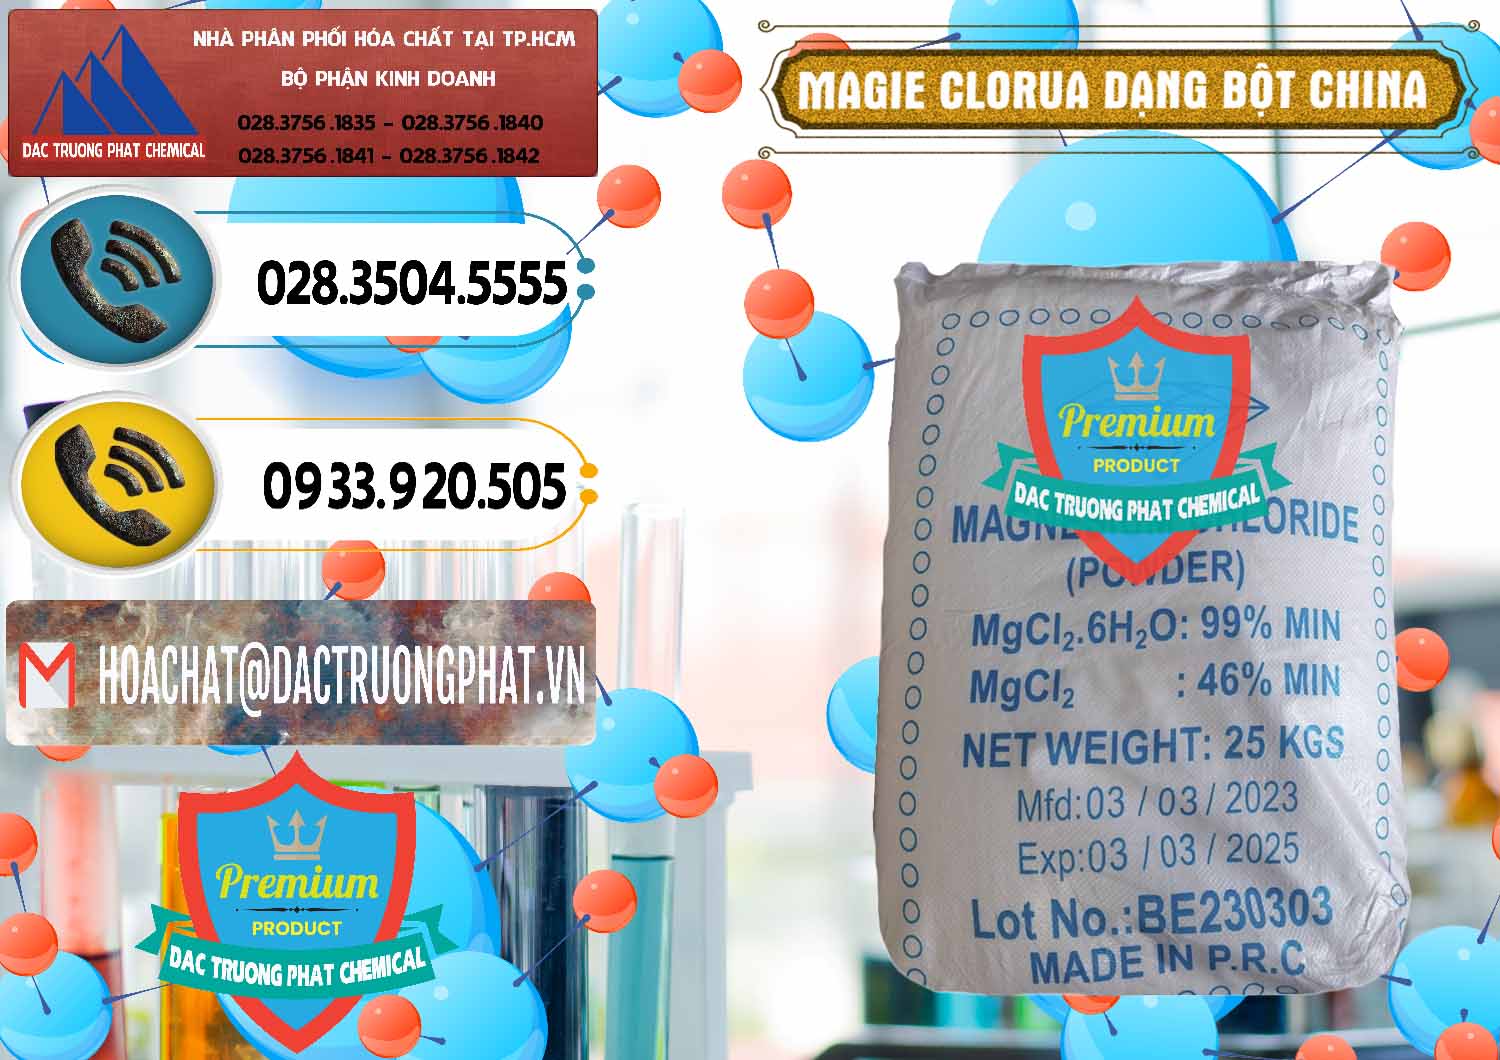 Phân phối và bán Magie Clorua – MGCL2 96% Dạng Bột Logo Kim Cương Trung Quốc China - 0387 - Nơi chuyên phân phối và bán hóa chất tại TP.HCM - hoachatdetnhuom.vn